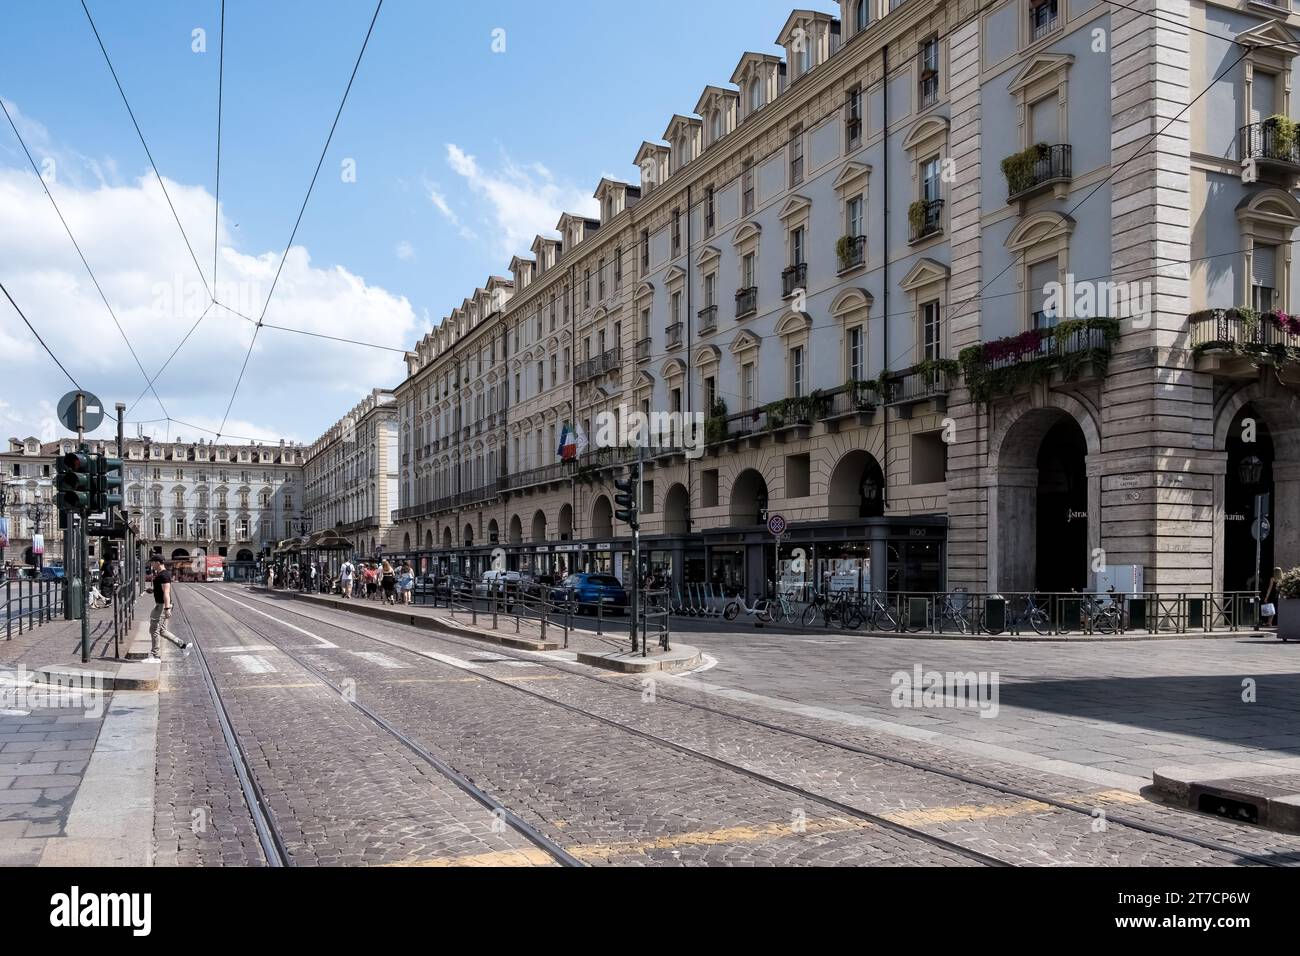 Vista delle strade che circondano Piazza Castello, un'importante piazza nel centro della città, che ospita numerosi monumenti storici, musei e caffetterie Foto Stock